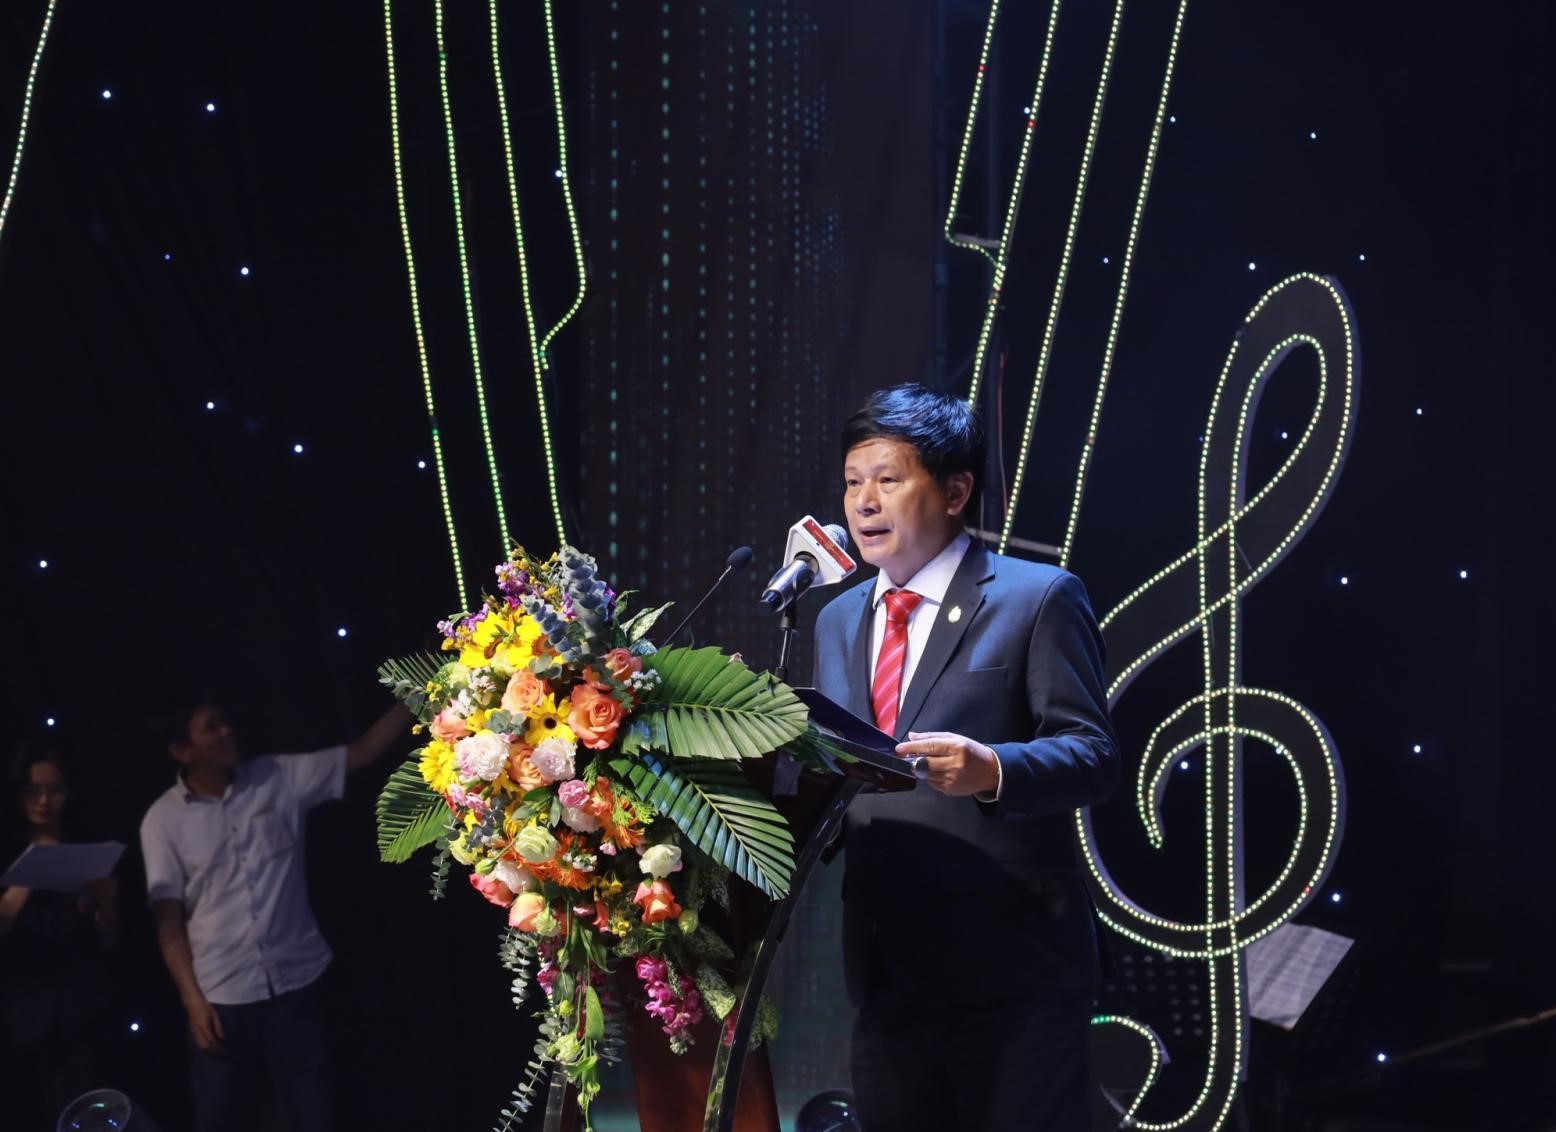 Ông Trần Trọng Dũng, Phó chủ tịch Hội nhà báo Việt Nam phát biểu khai mạc chương trình.